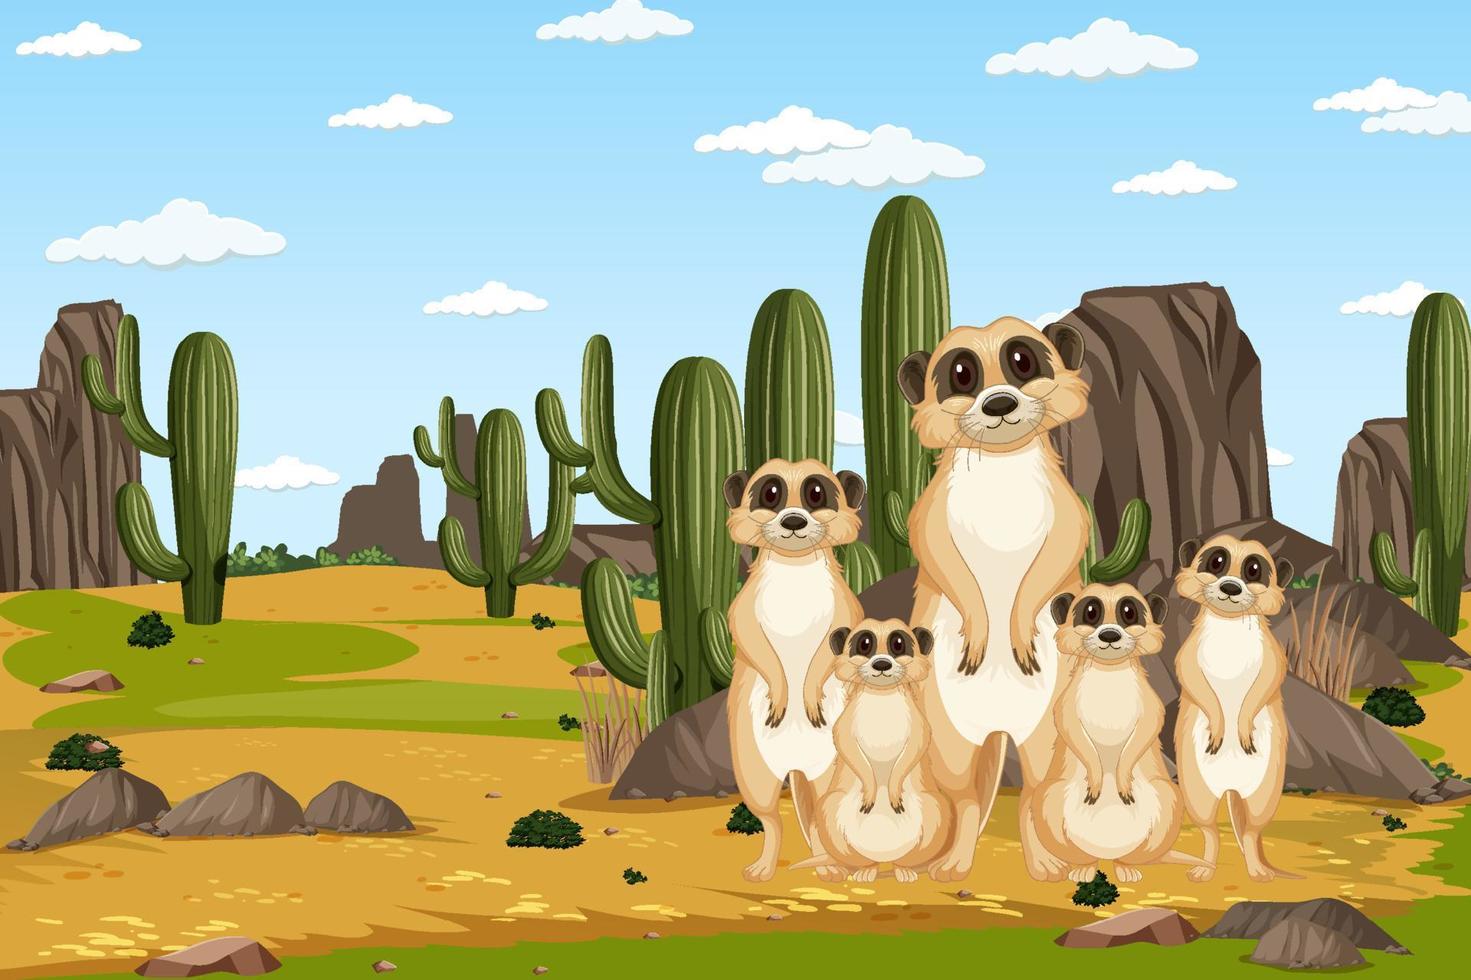 Fondo del desierto con un grupo de suricatas. vector